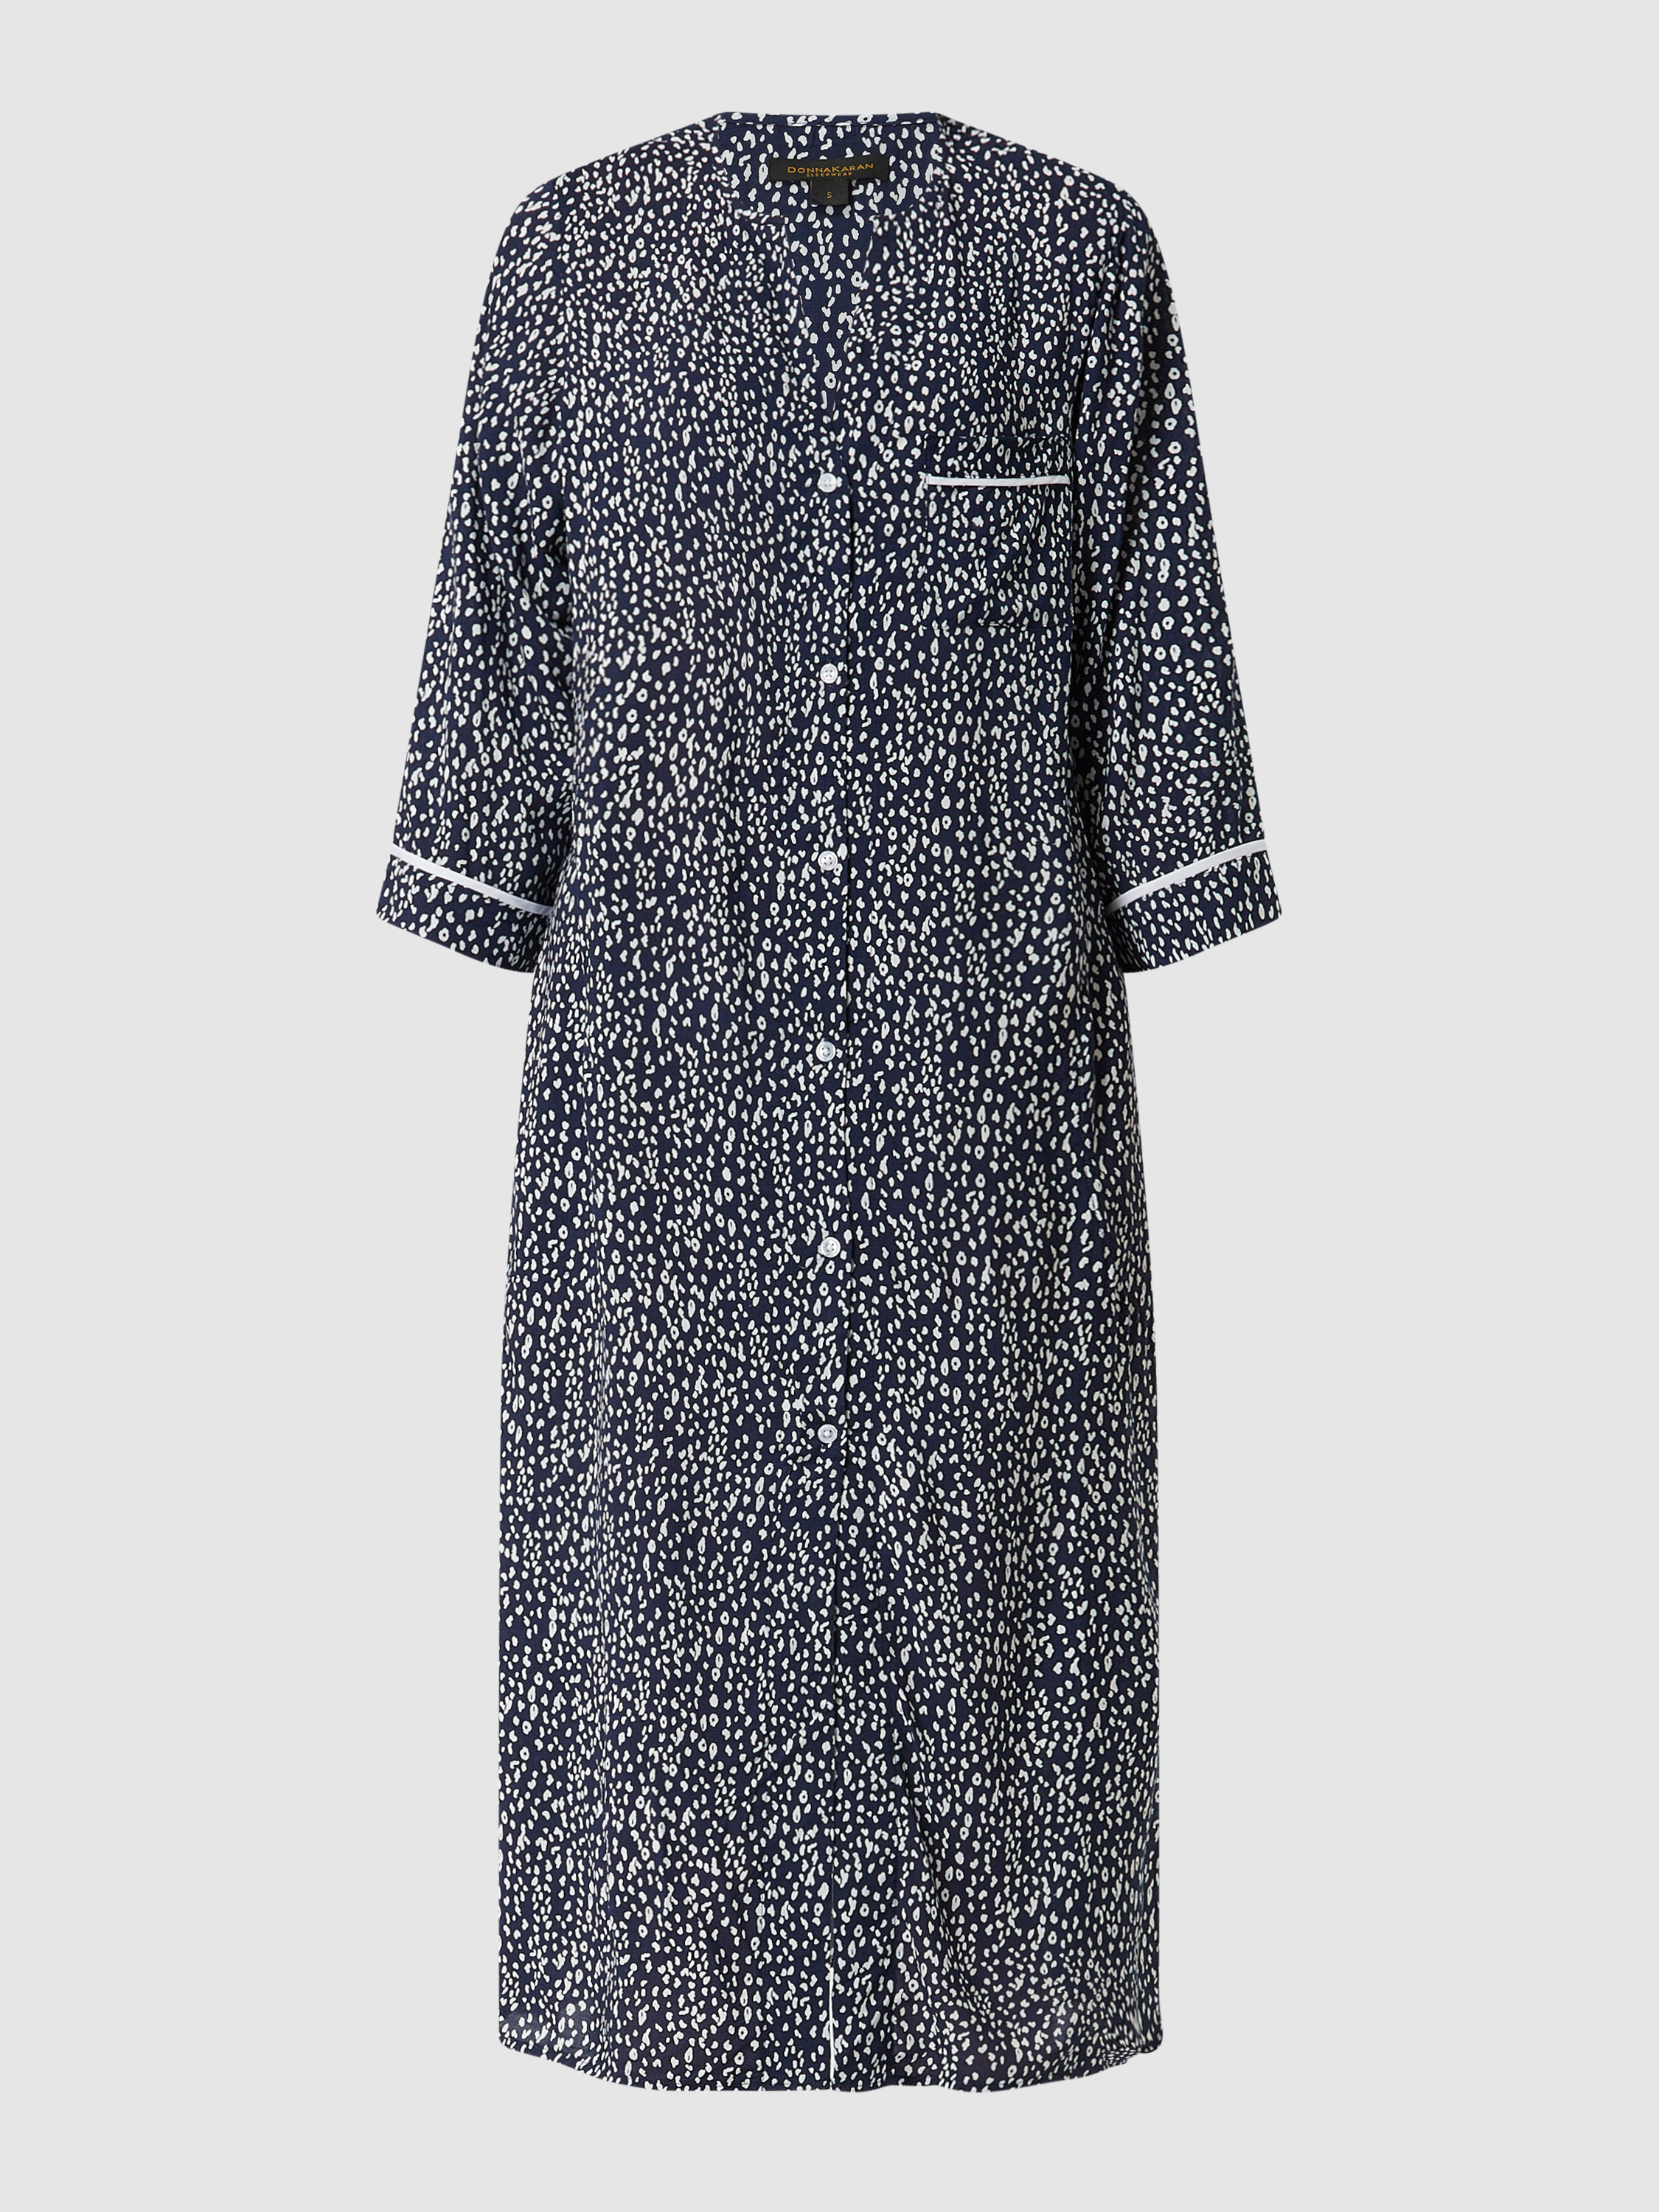 Платье домашнее женское DKNY 1529249 синее M (доставка из-за рубежа)